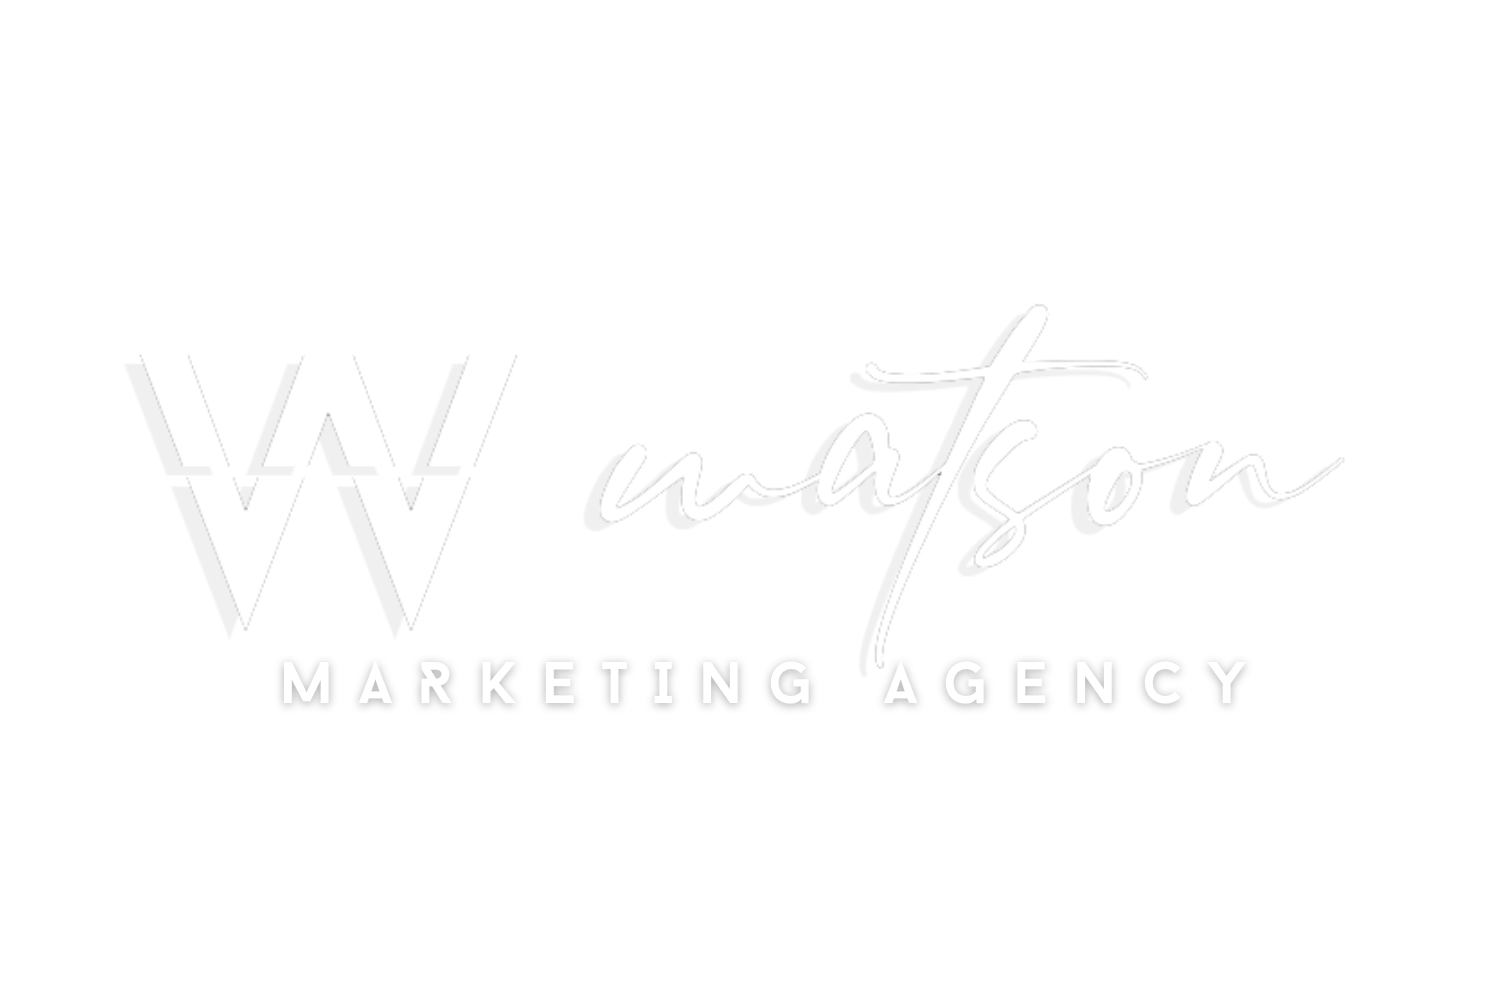 The-Watson-Agency